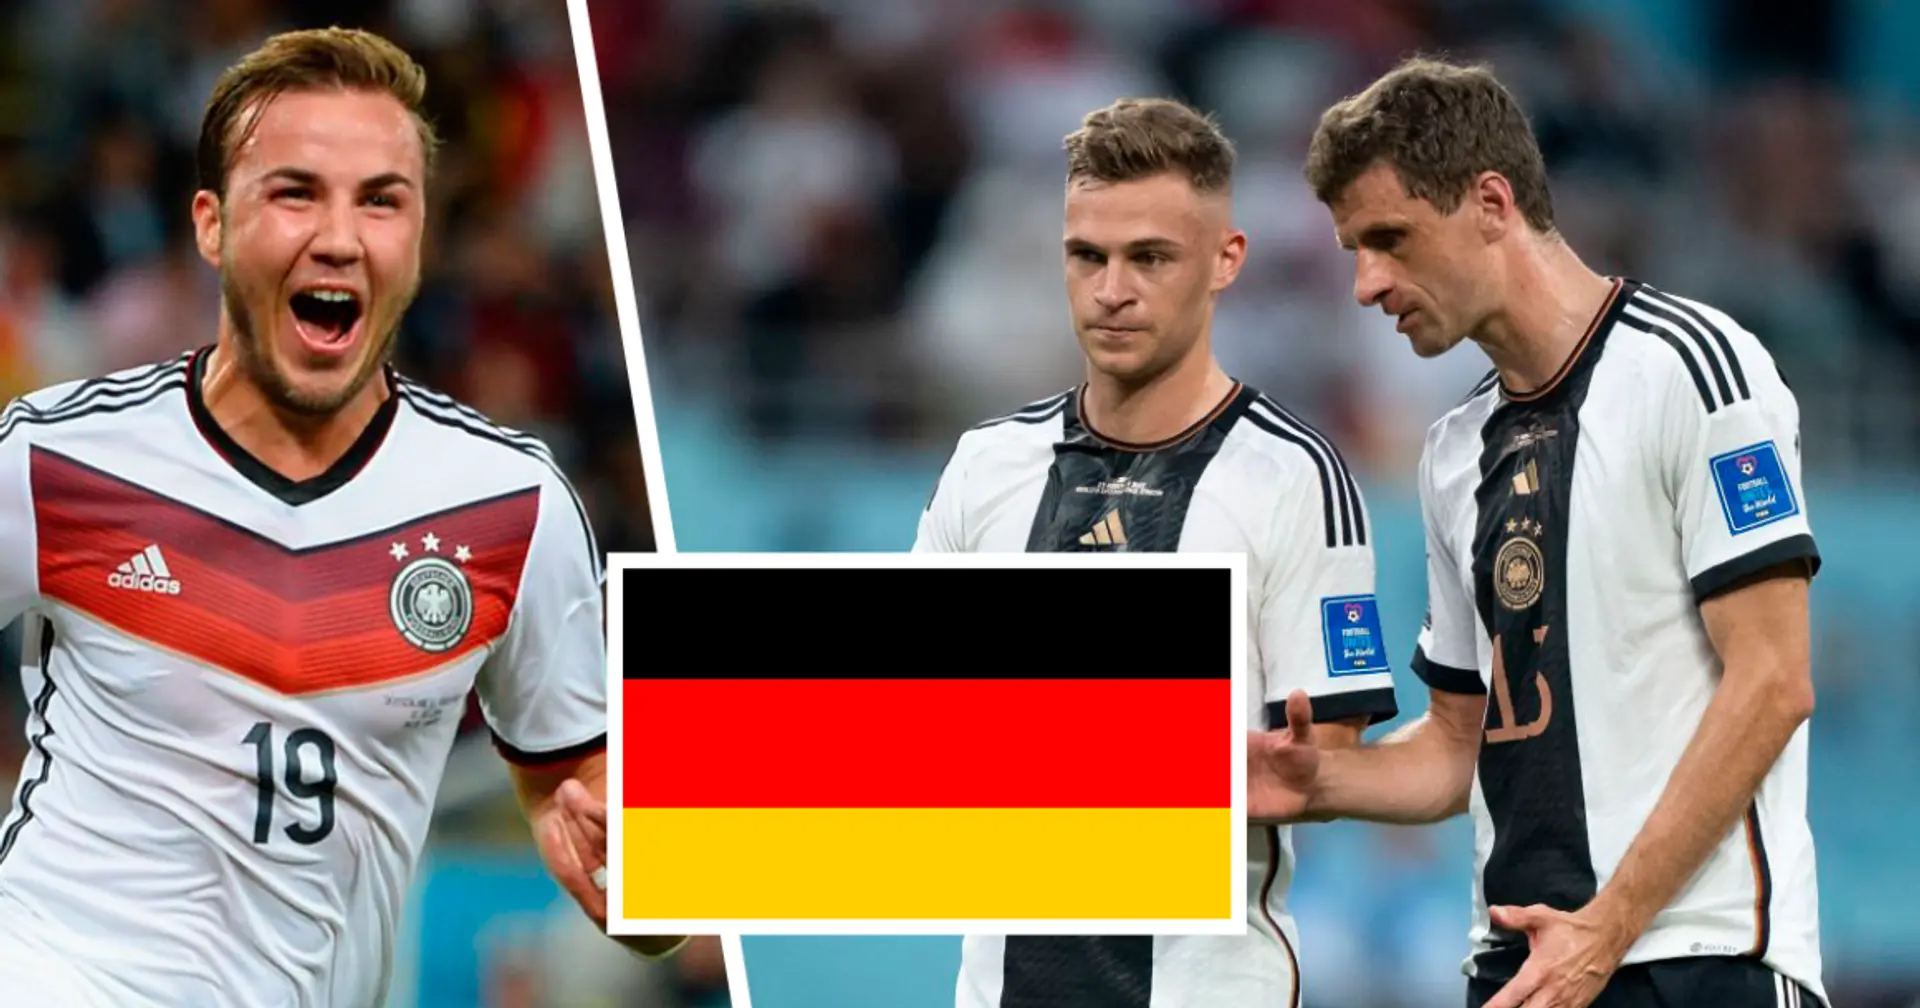 Warum spielt DFB-Team in Weiß, obwohl die deutsche Flagge keine weiße Farbe hat? ERKLÄRT